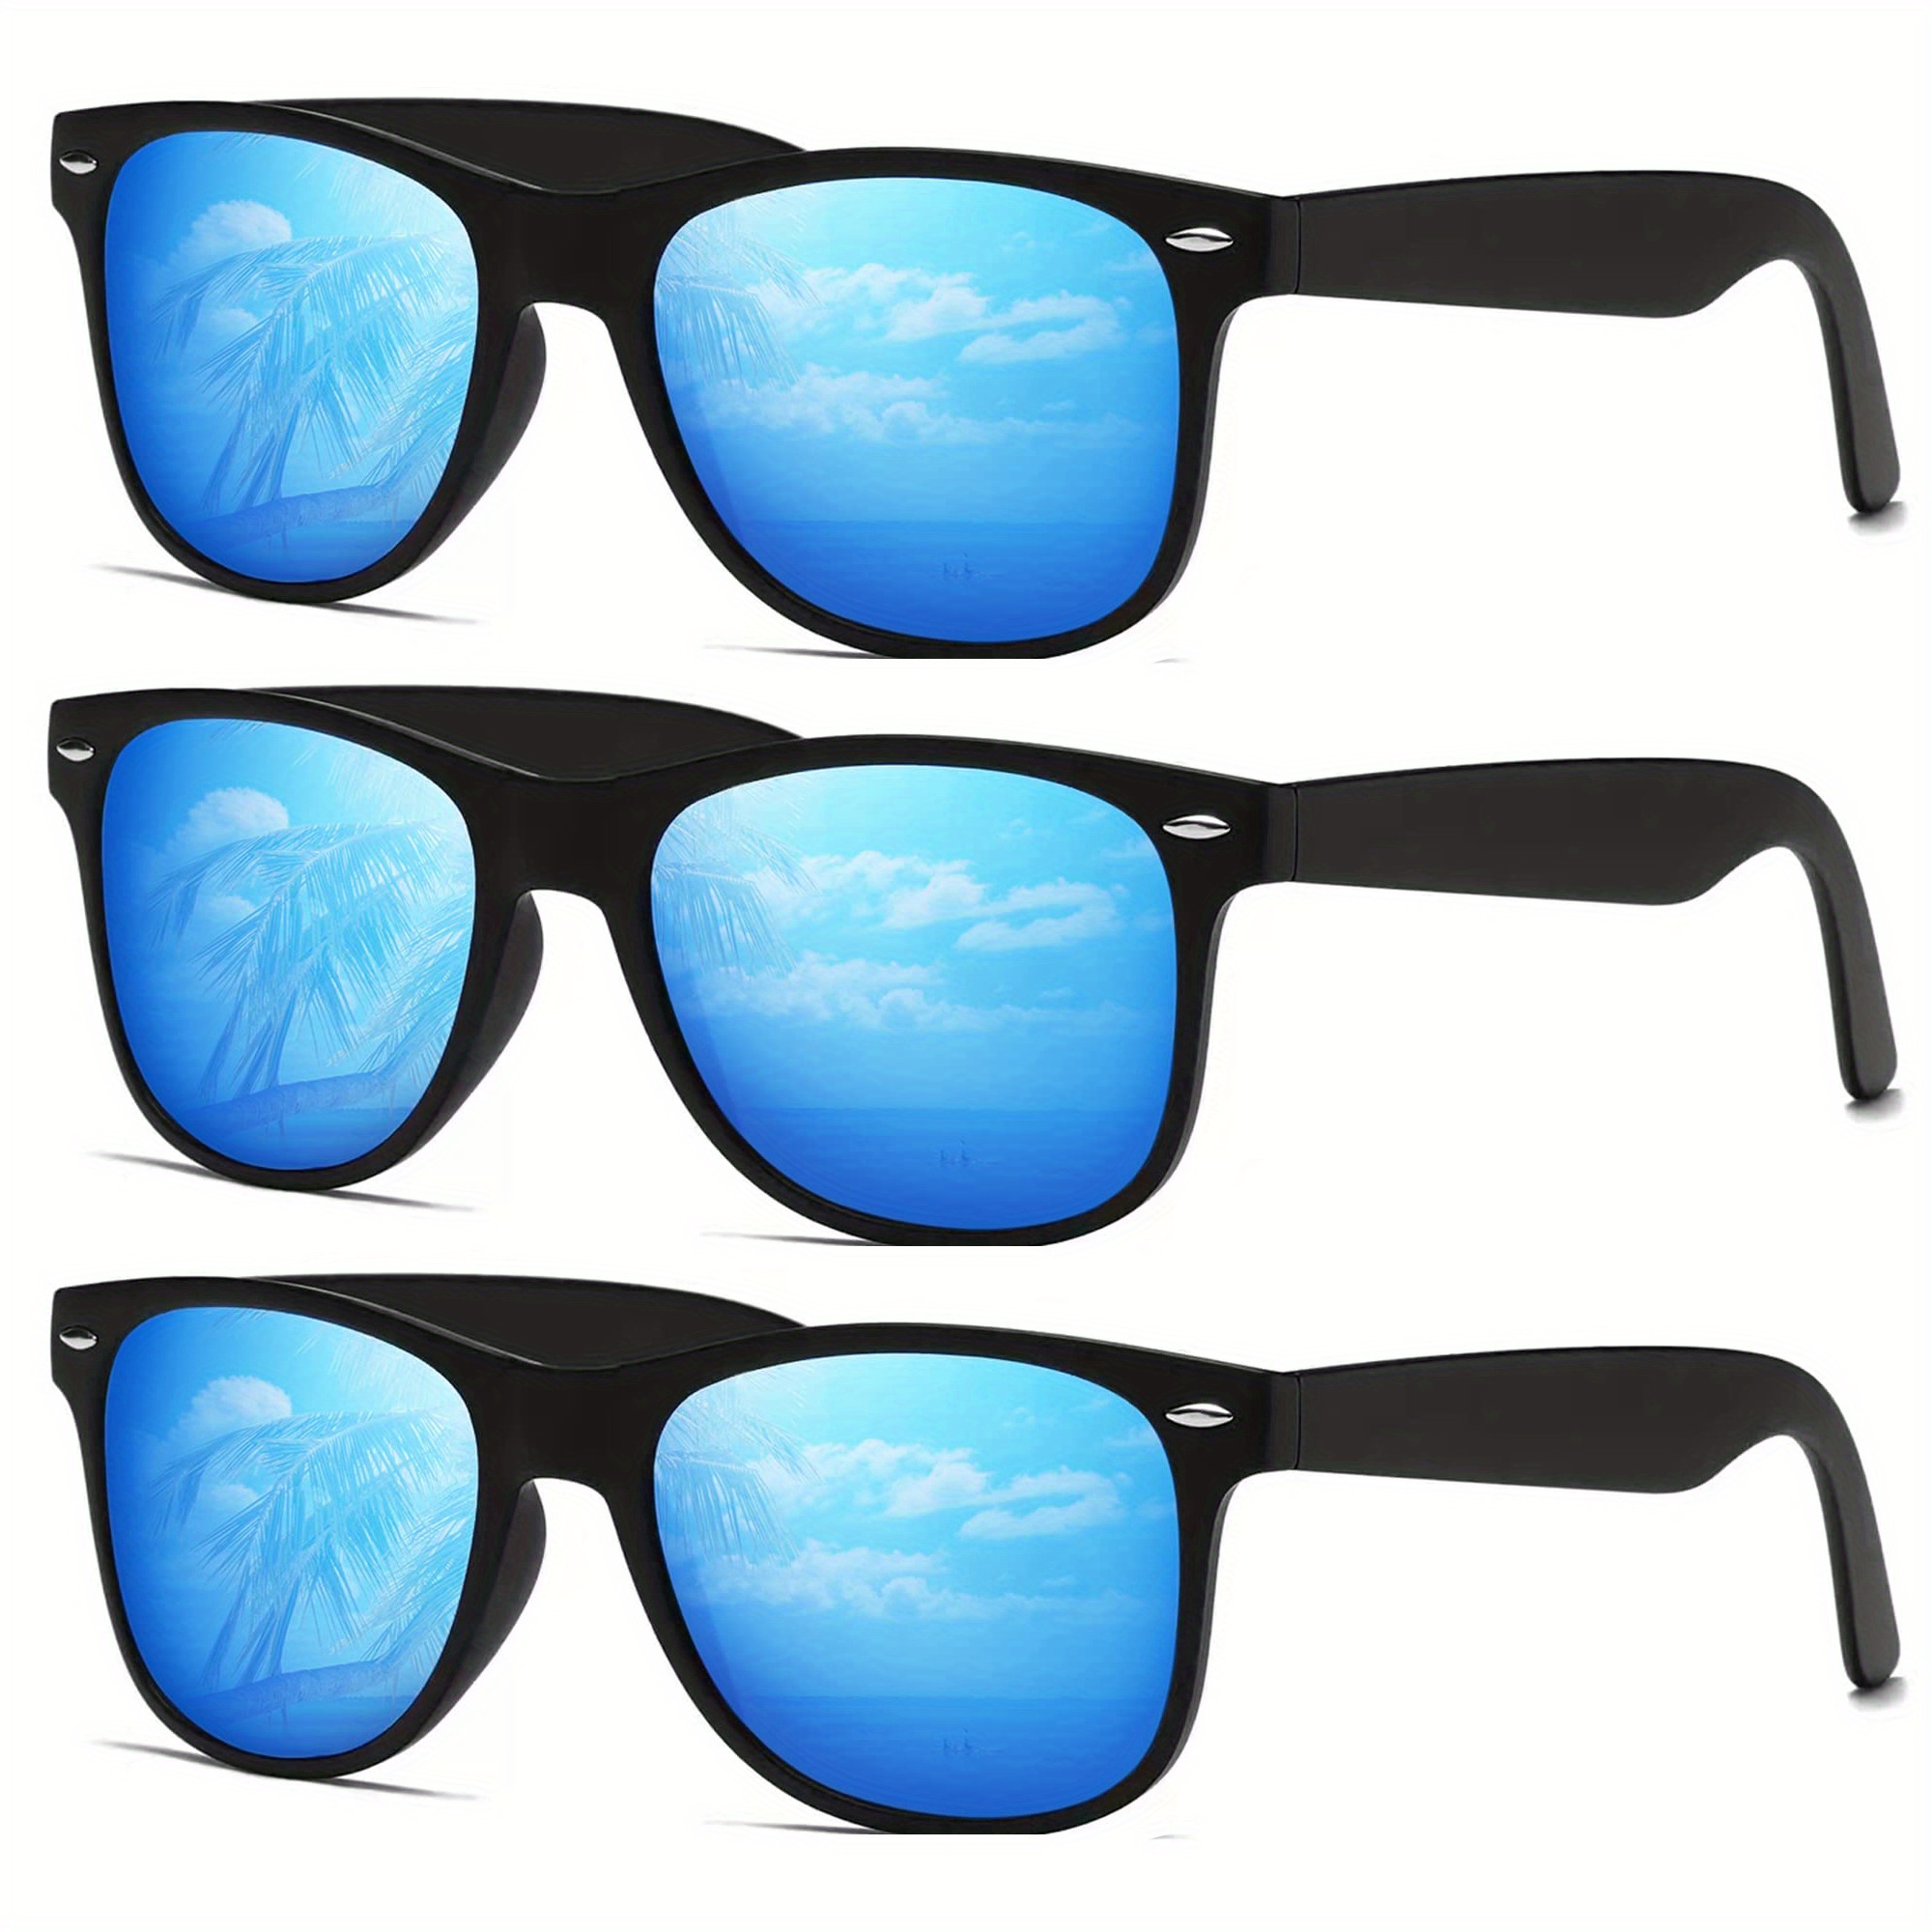 3pcs unisex Polarized Sunglasses for Men Women Driving Fishing UV400 Protection Sunglasses Pit Vipers,Sun Glasses,Goggles Sunglasses,Y2k,Eyeglasses